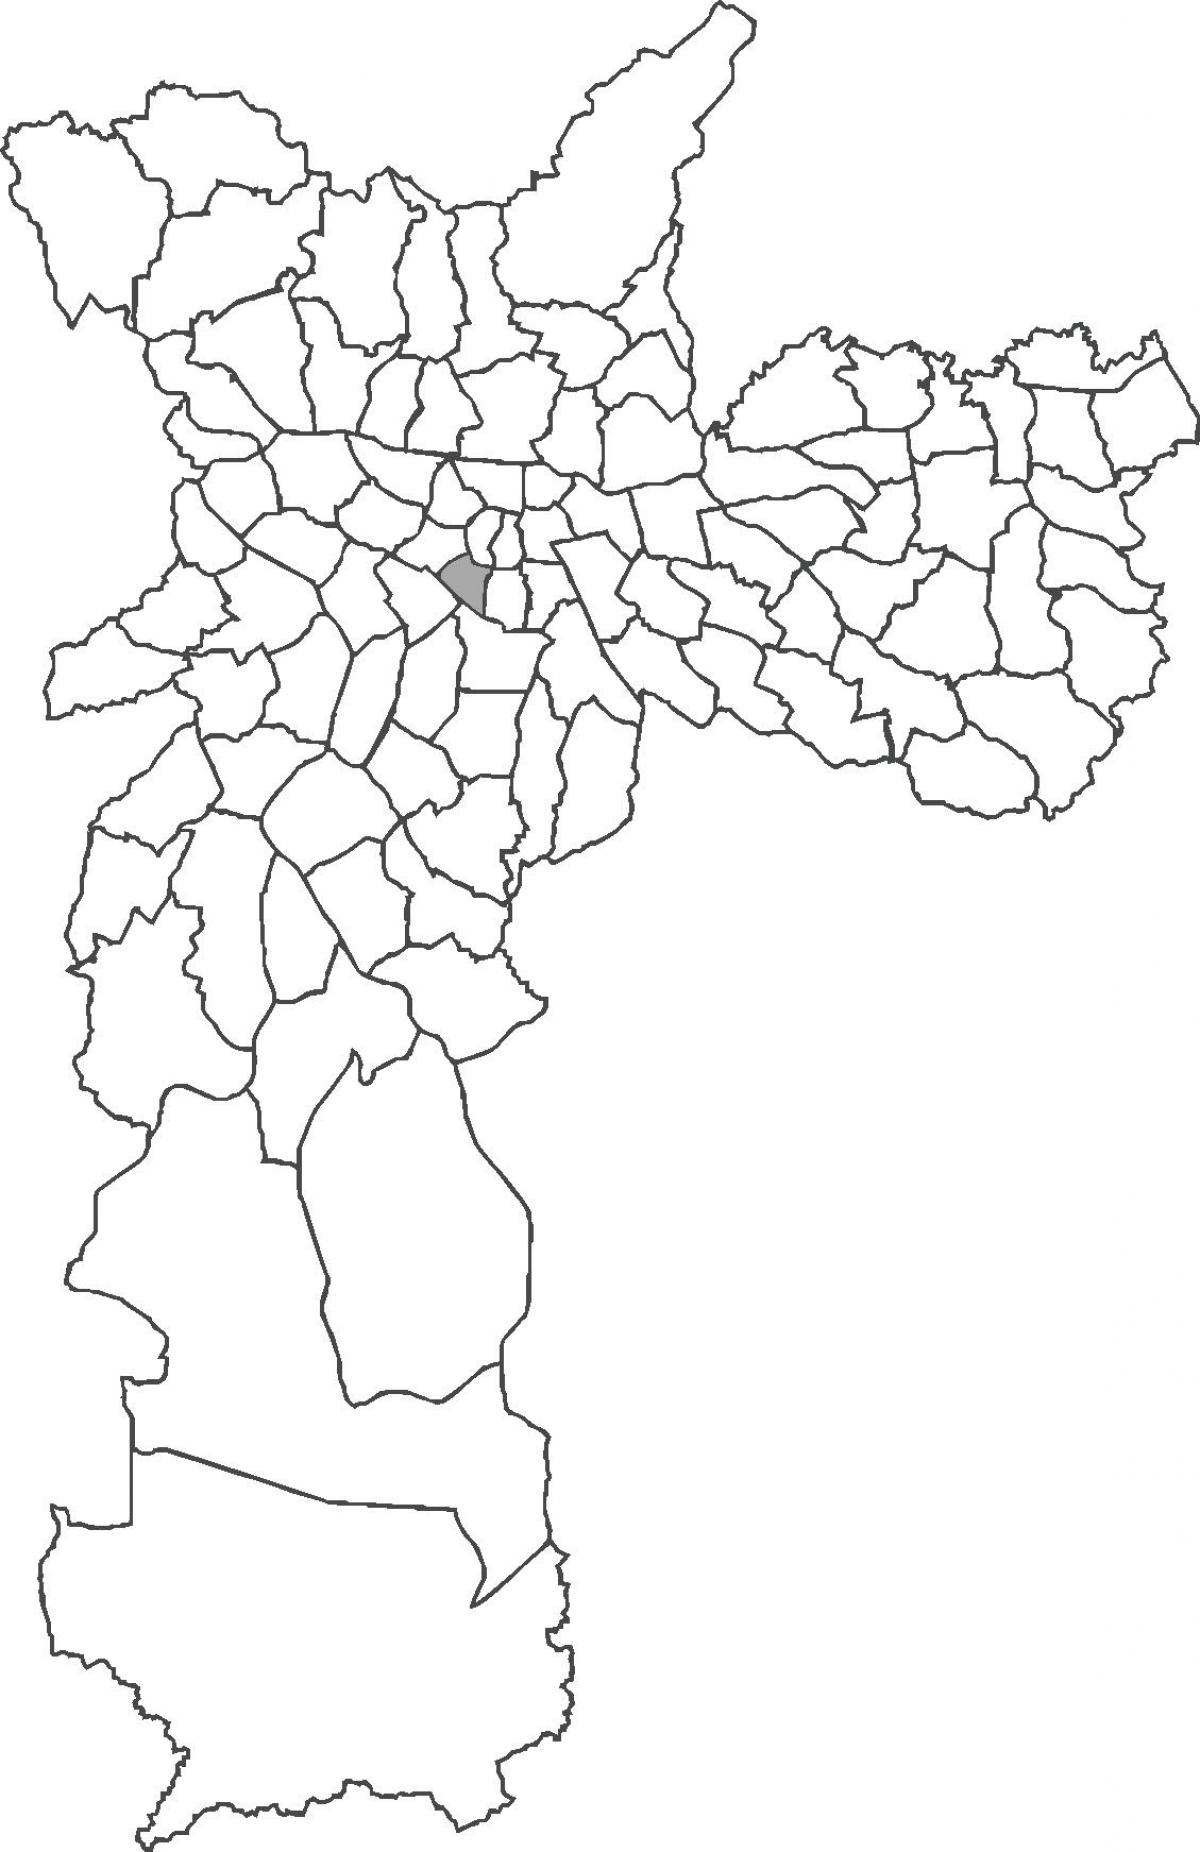 Peta dari Bela Vista kabupaten